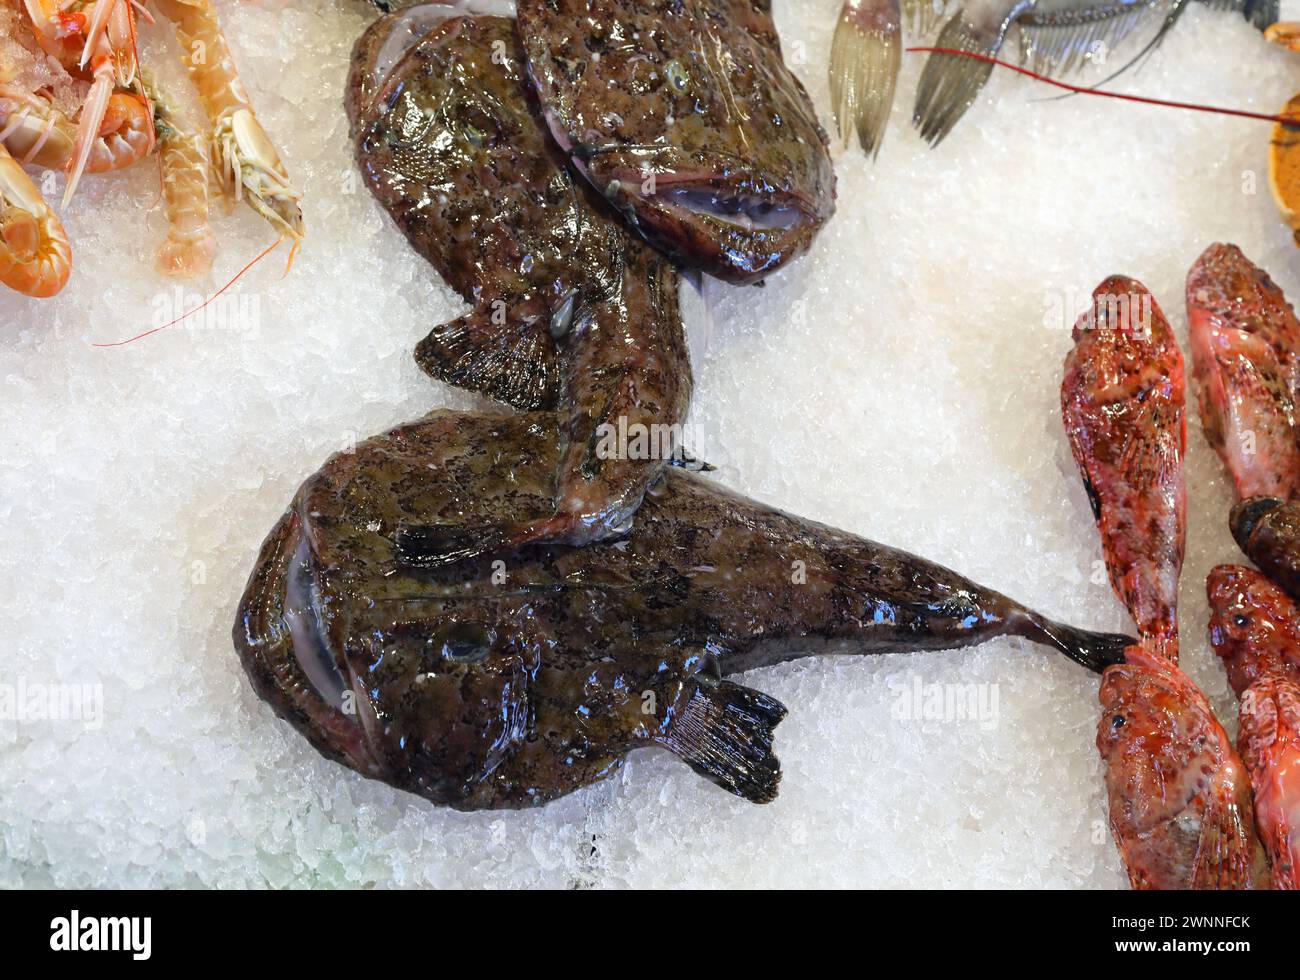 Poisson Monkfish avec museau large et bouche ouverte sur la glace du comptoir à vendre dans le magasin de poisson au marché aux poissons avec d'autres types de poissons tels que s Banque D'Images